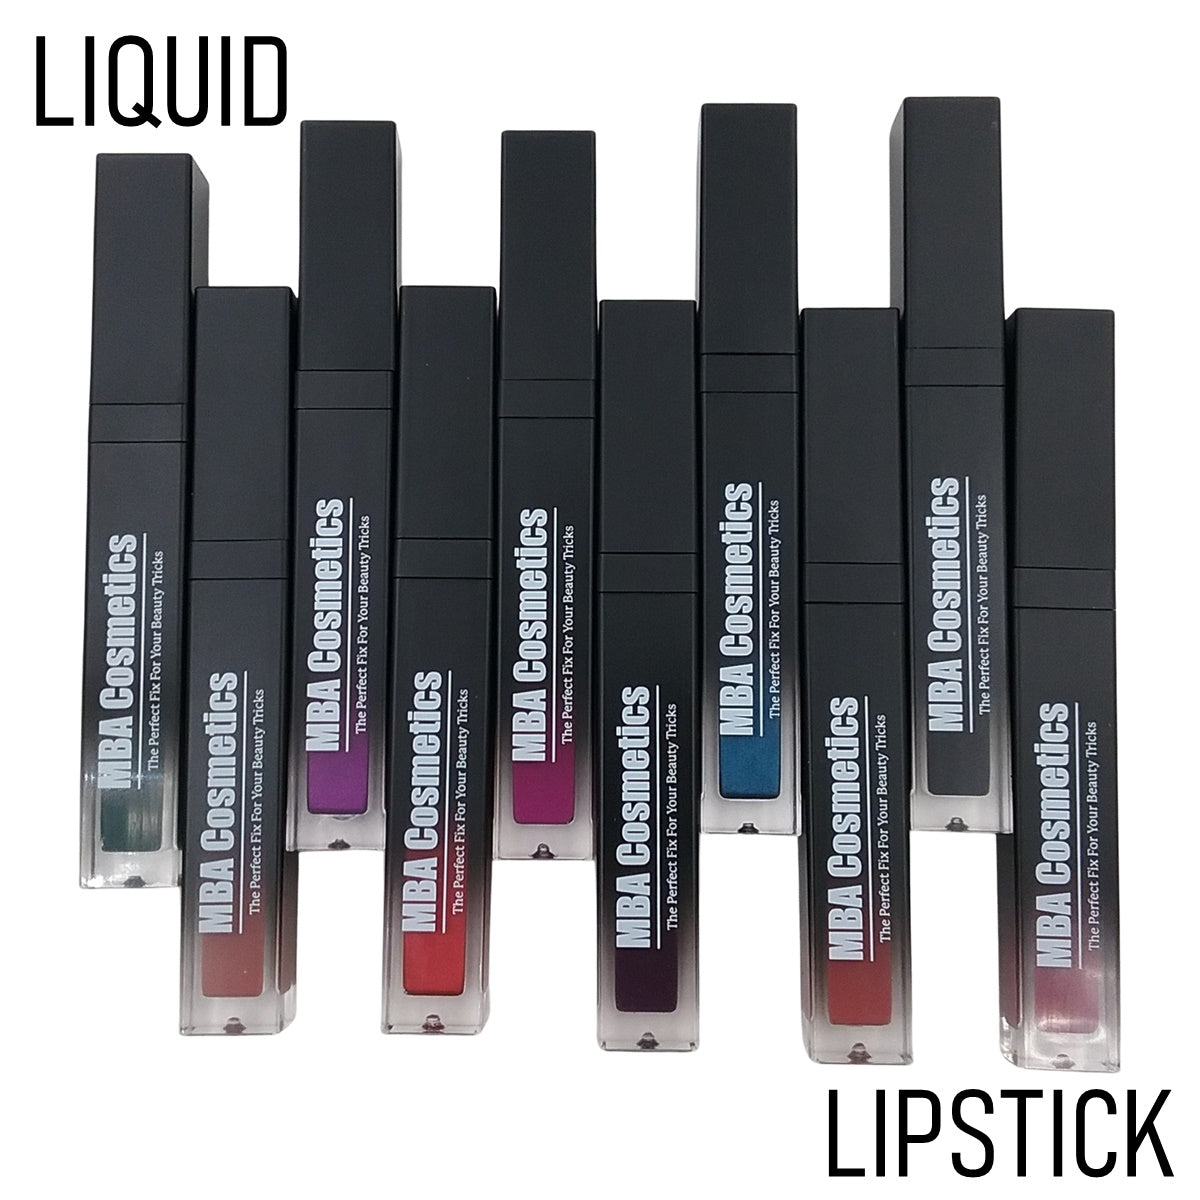 Cashmere-Matte Liquid Lipstick